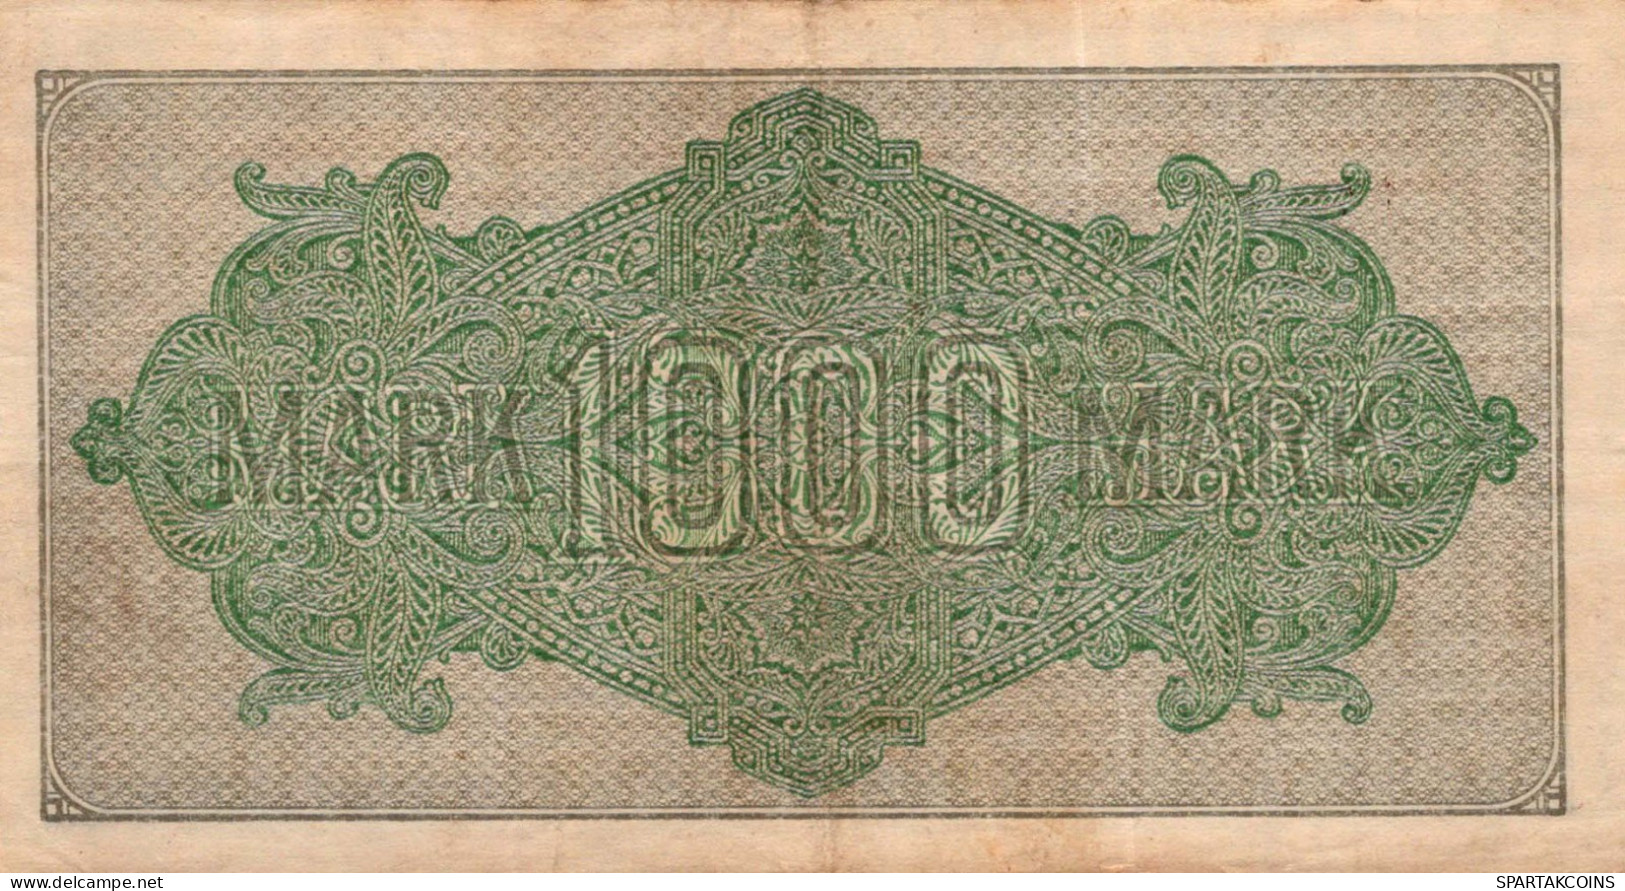 1000 MARK 1922 Stadt BERLIN DEUTSCHLAND Papiergeld Banknote #PL410 - [11] Emissioni Locali